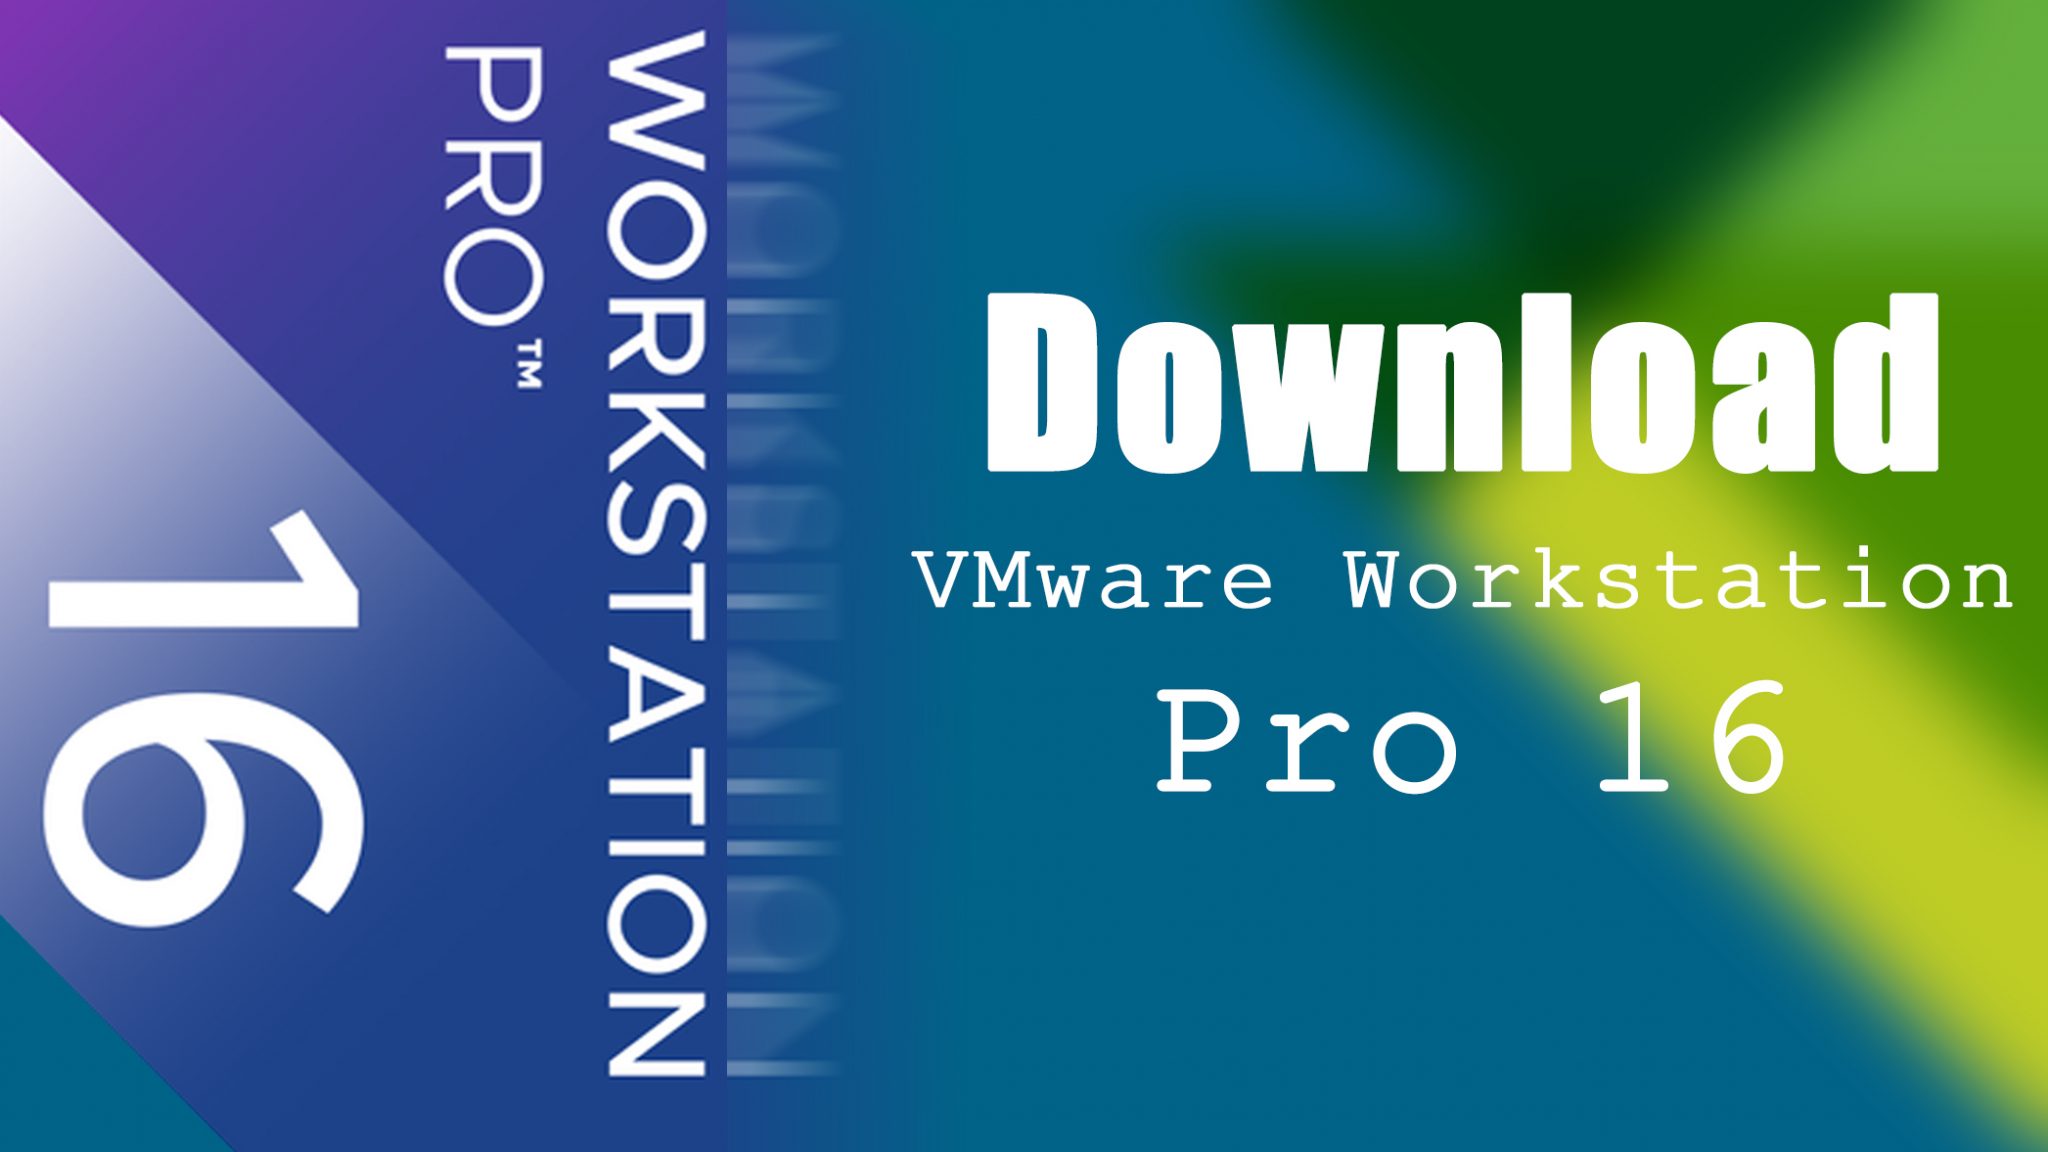 vmware workstation 16 pro free download